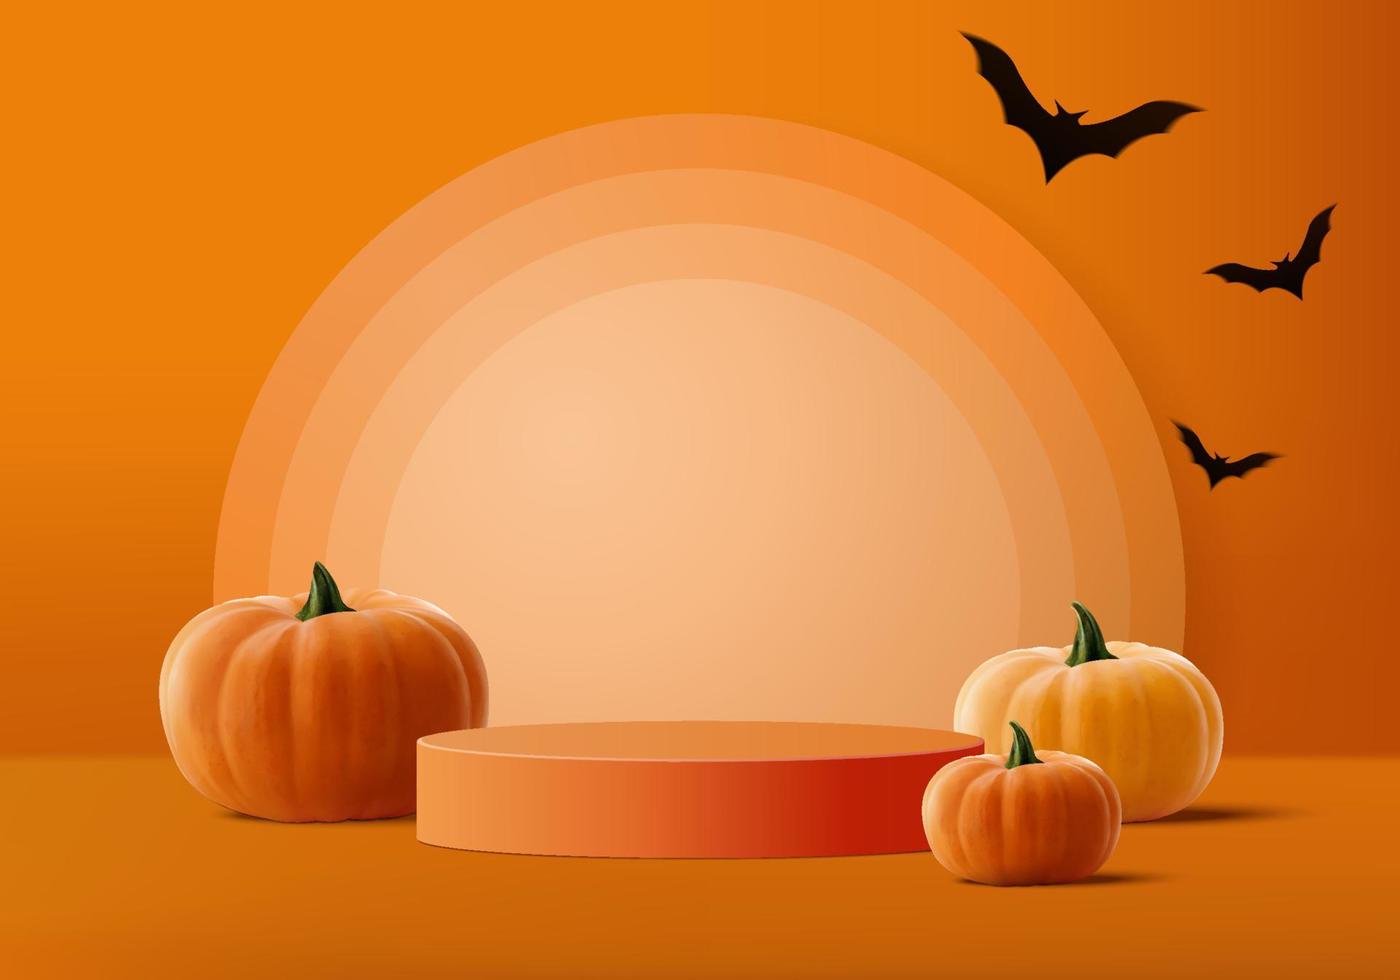 Cảnh Halloween đầy màu sắc, độc đáo và rùng rợn sẽ giúp bạn tận hưởng không khí lễ hội này một cách đặc biệt. Hãy cùng ngắm nhìn hình ảnh để cảm nhận sự thú vị tại Halloween.